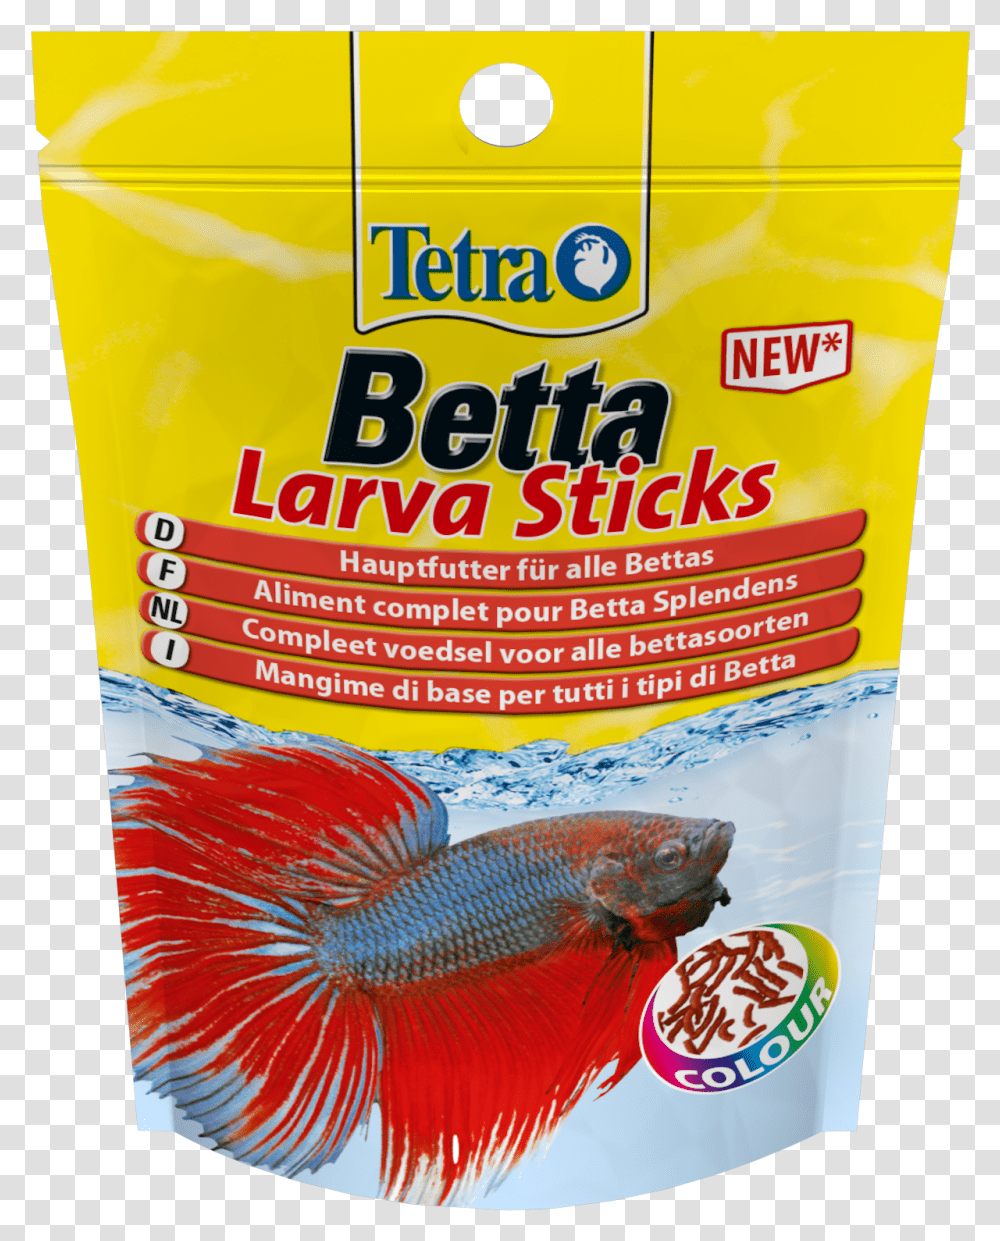 Tetra Betta Larvasticks Tetra, Fish, Animal, Goldfish, Poster Transparent Png